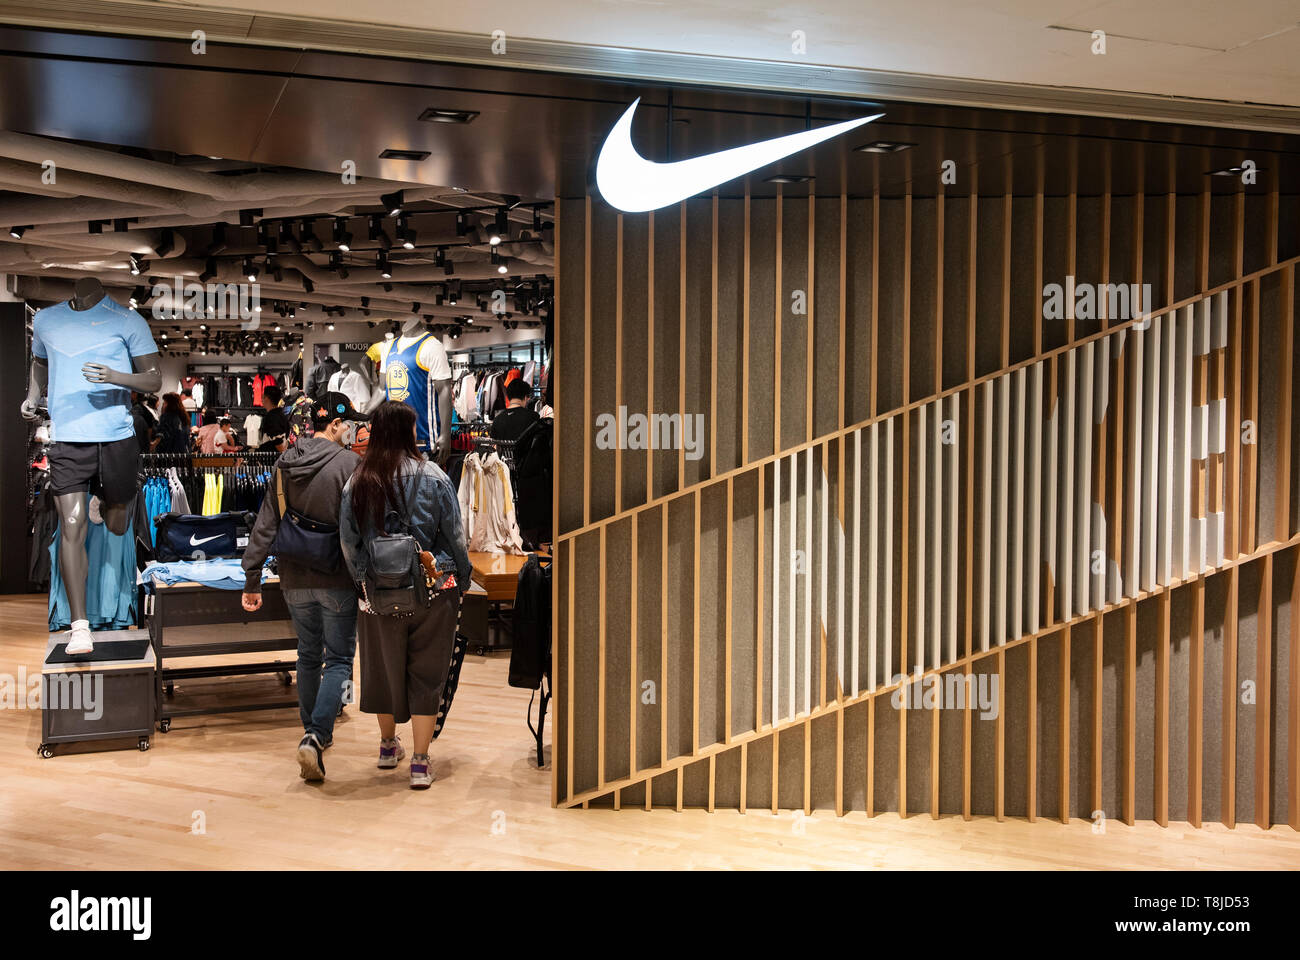 Multinacional marca ropa deportiva Nike Store. Visto Hong Kong Fotografía de stock - Alamy